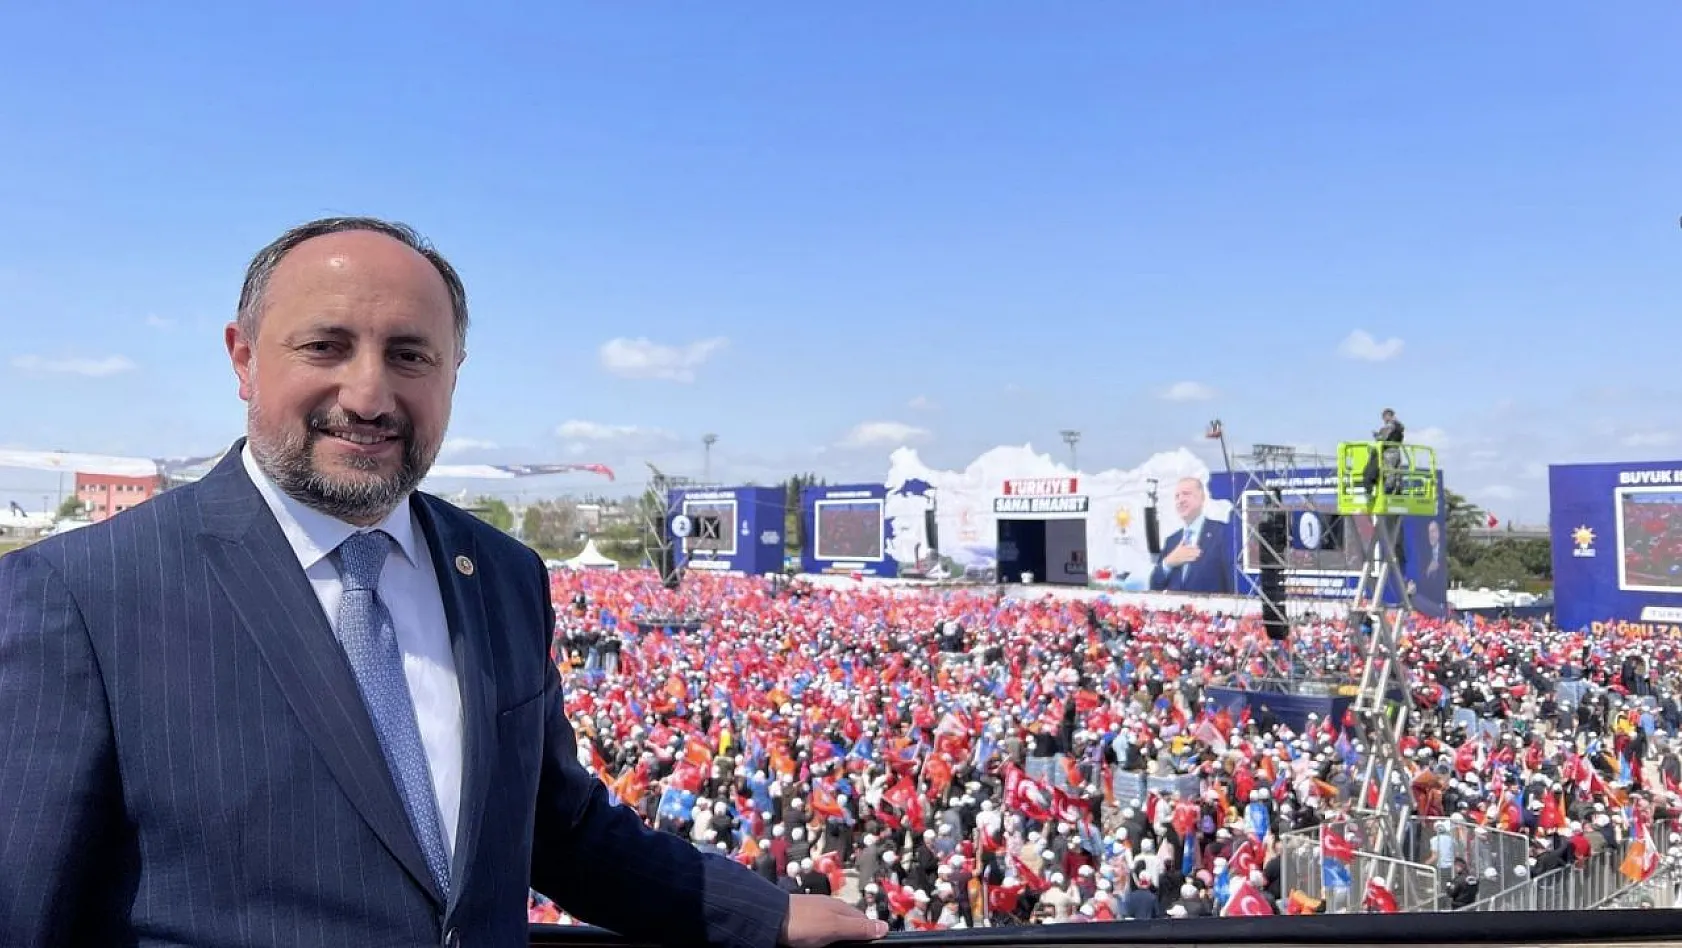 Kayseri'den aday gösterilmeyen Karayel, İstanbul'dan seçildi mi?